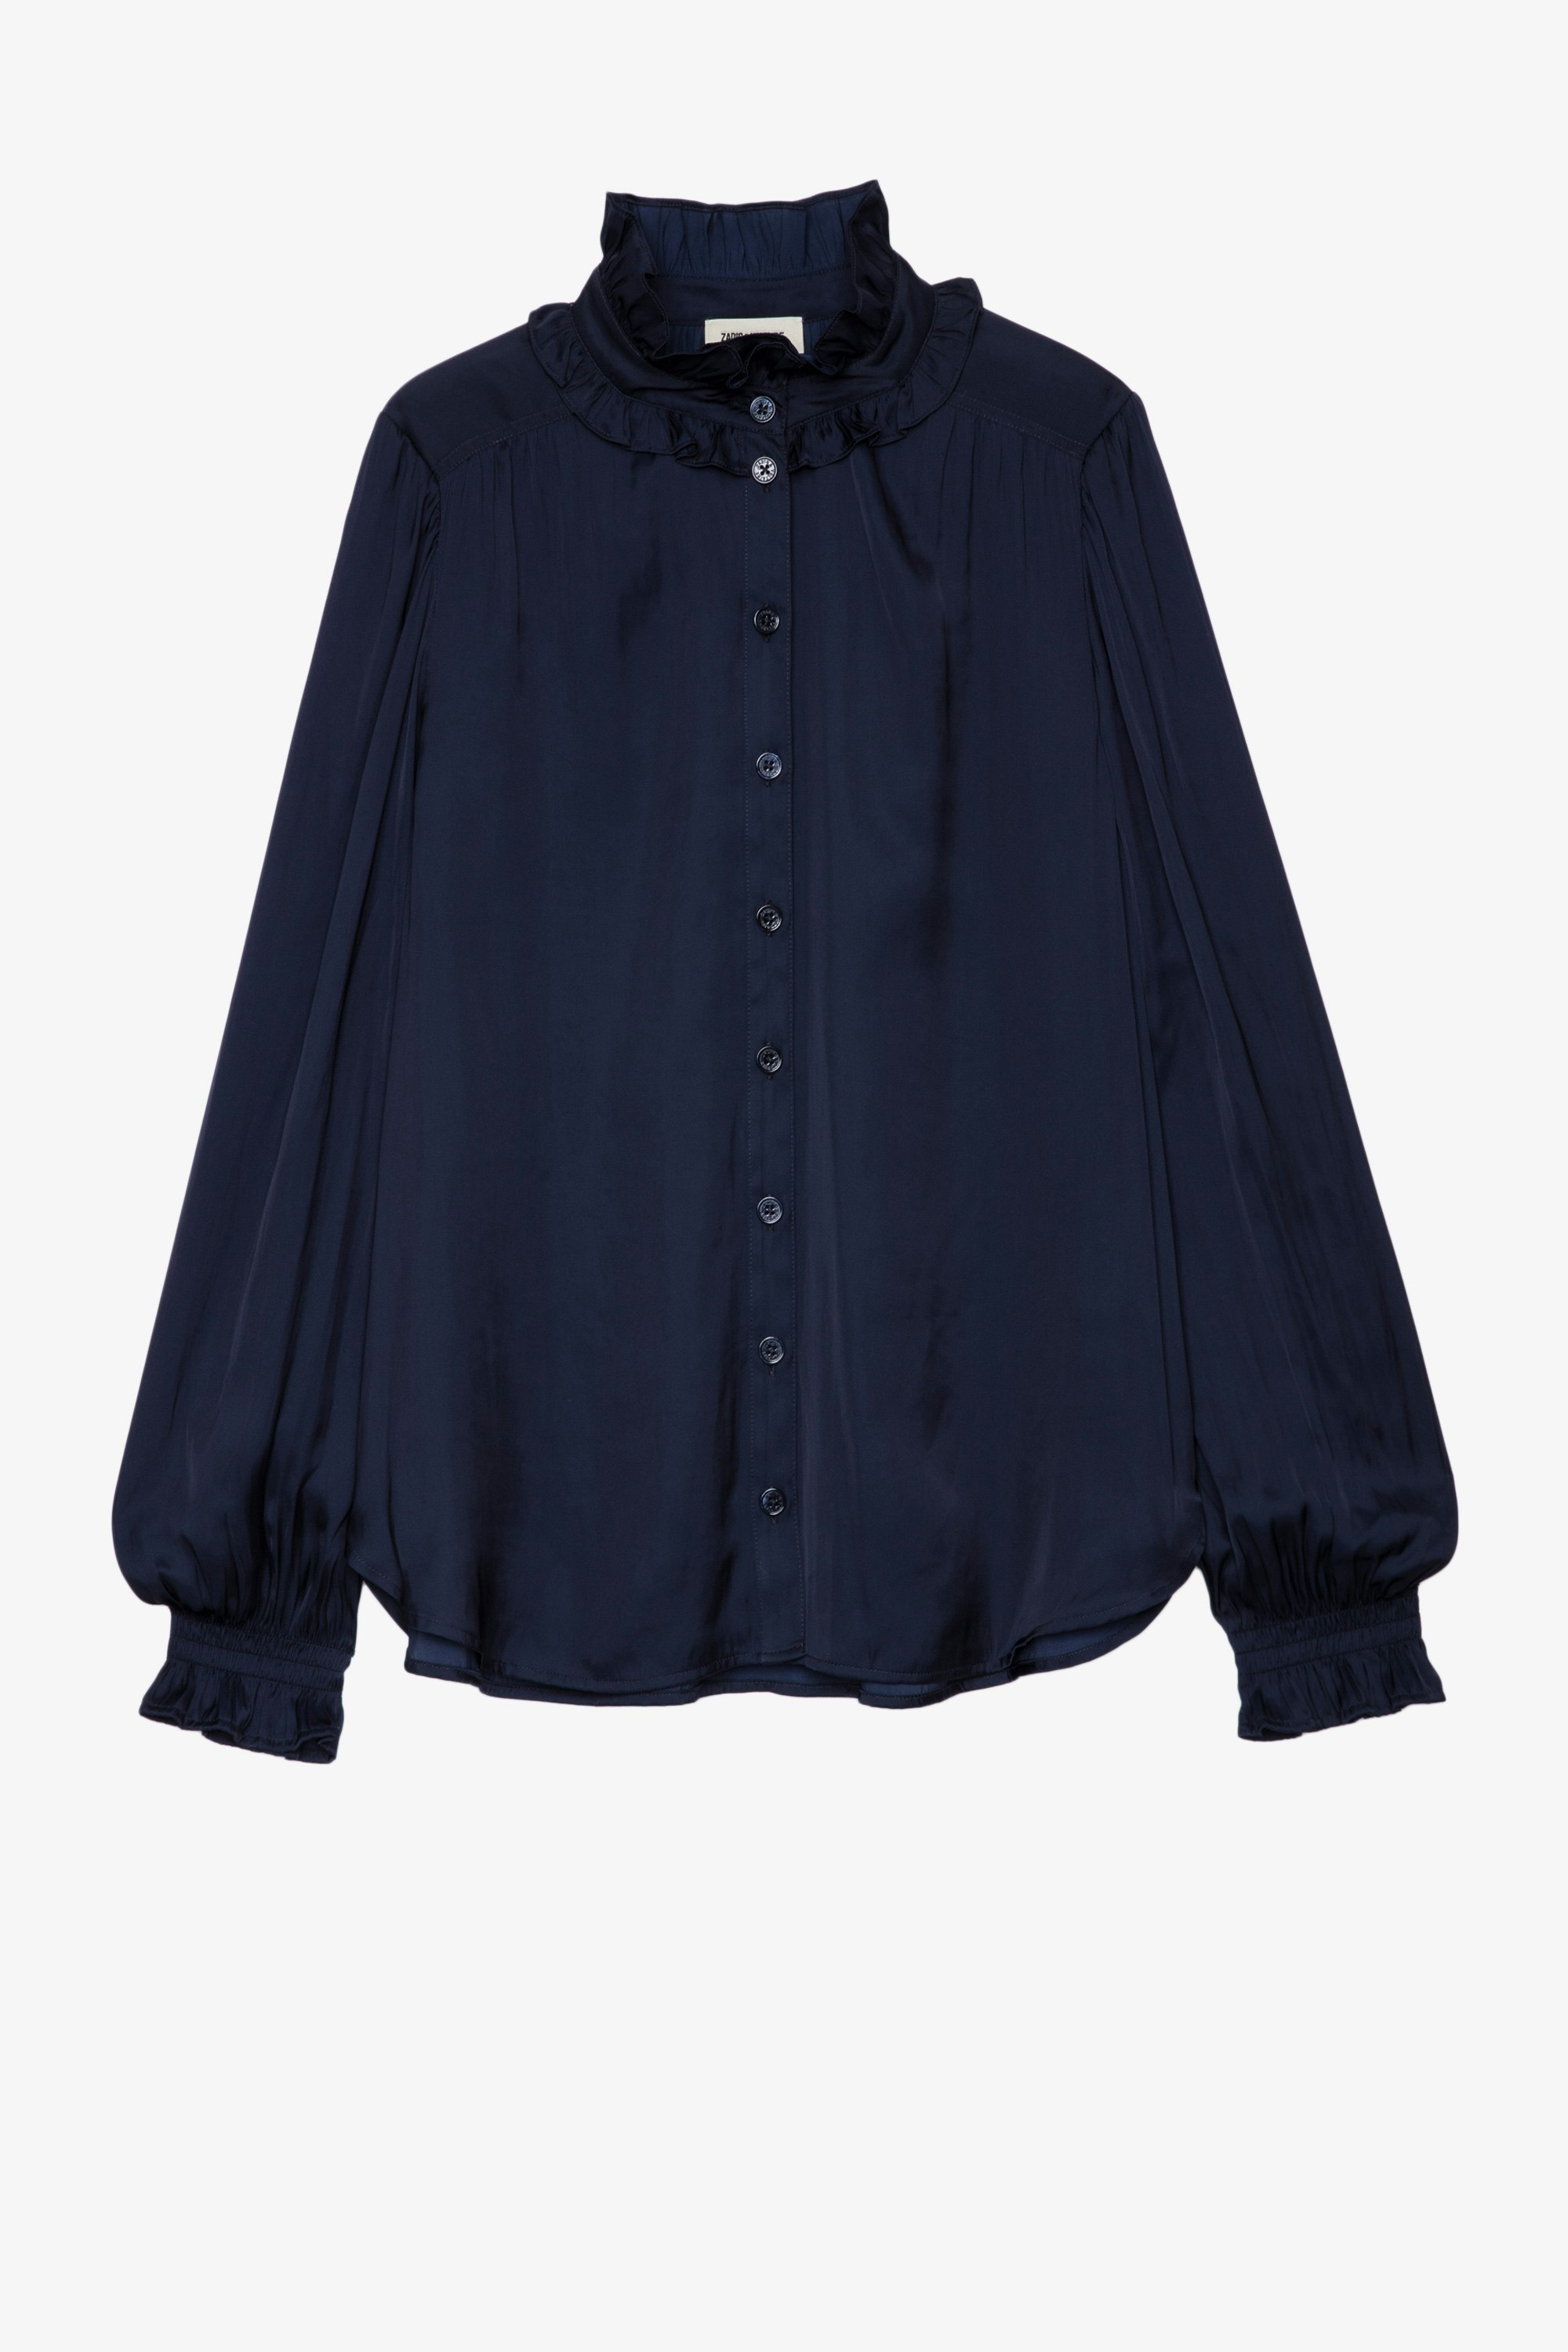 Tacca Shirt - Women's dark blue shirt.